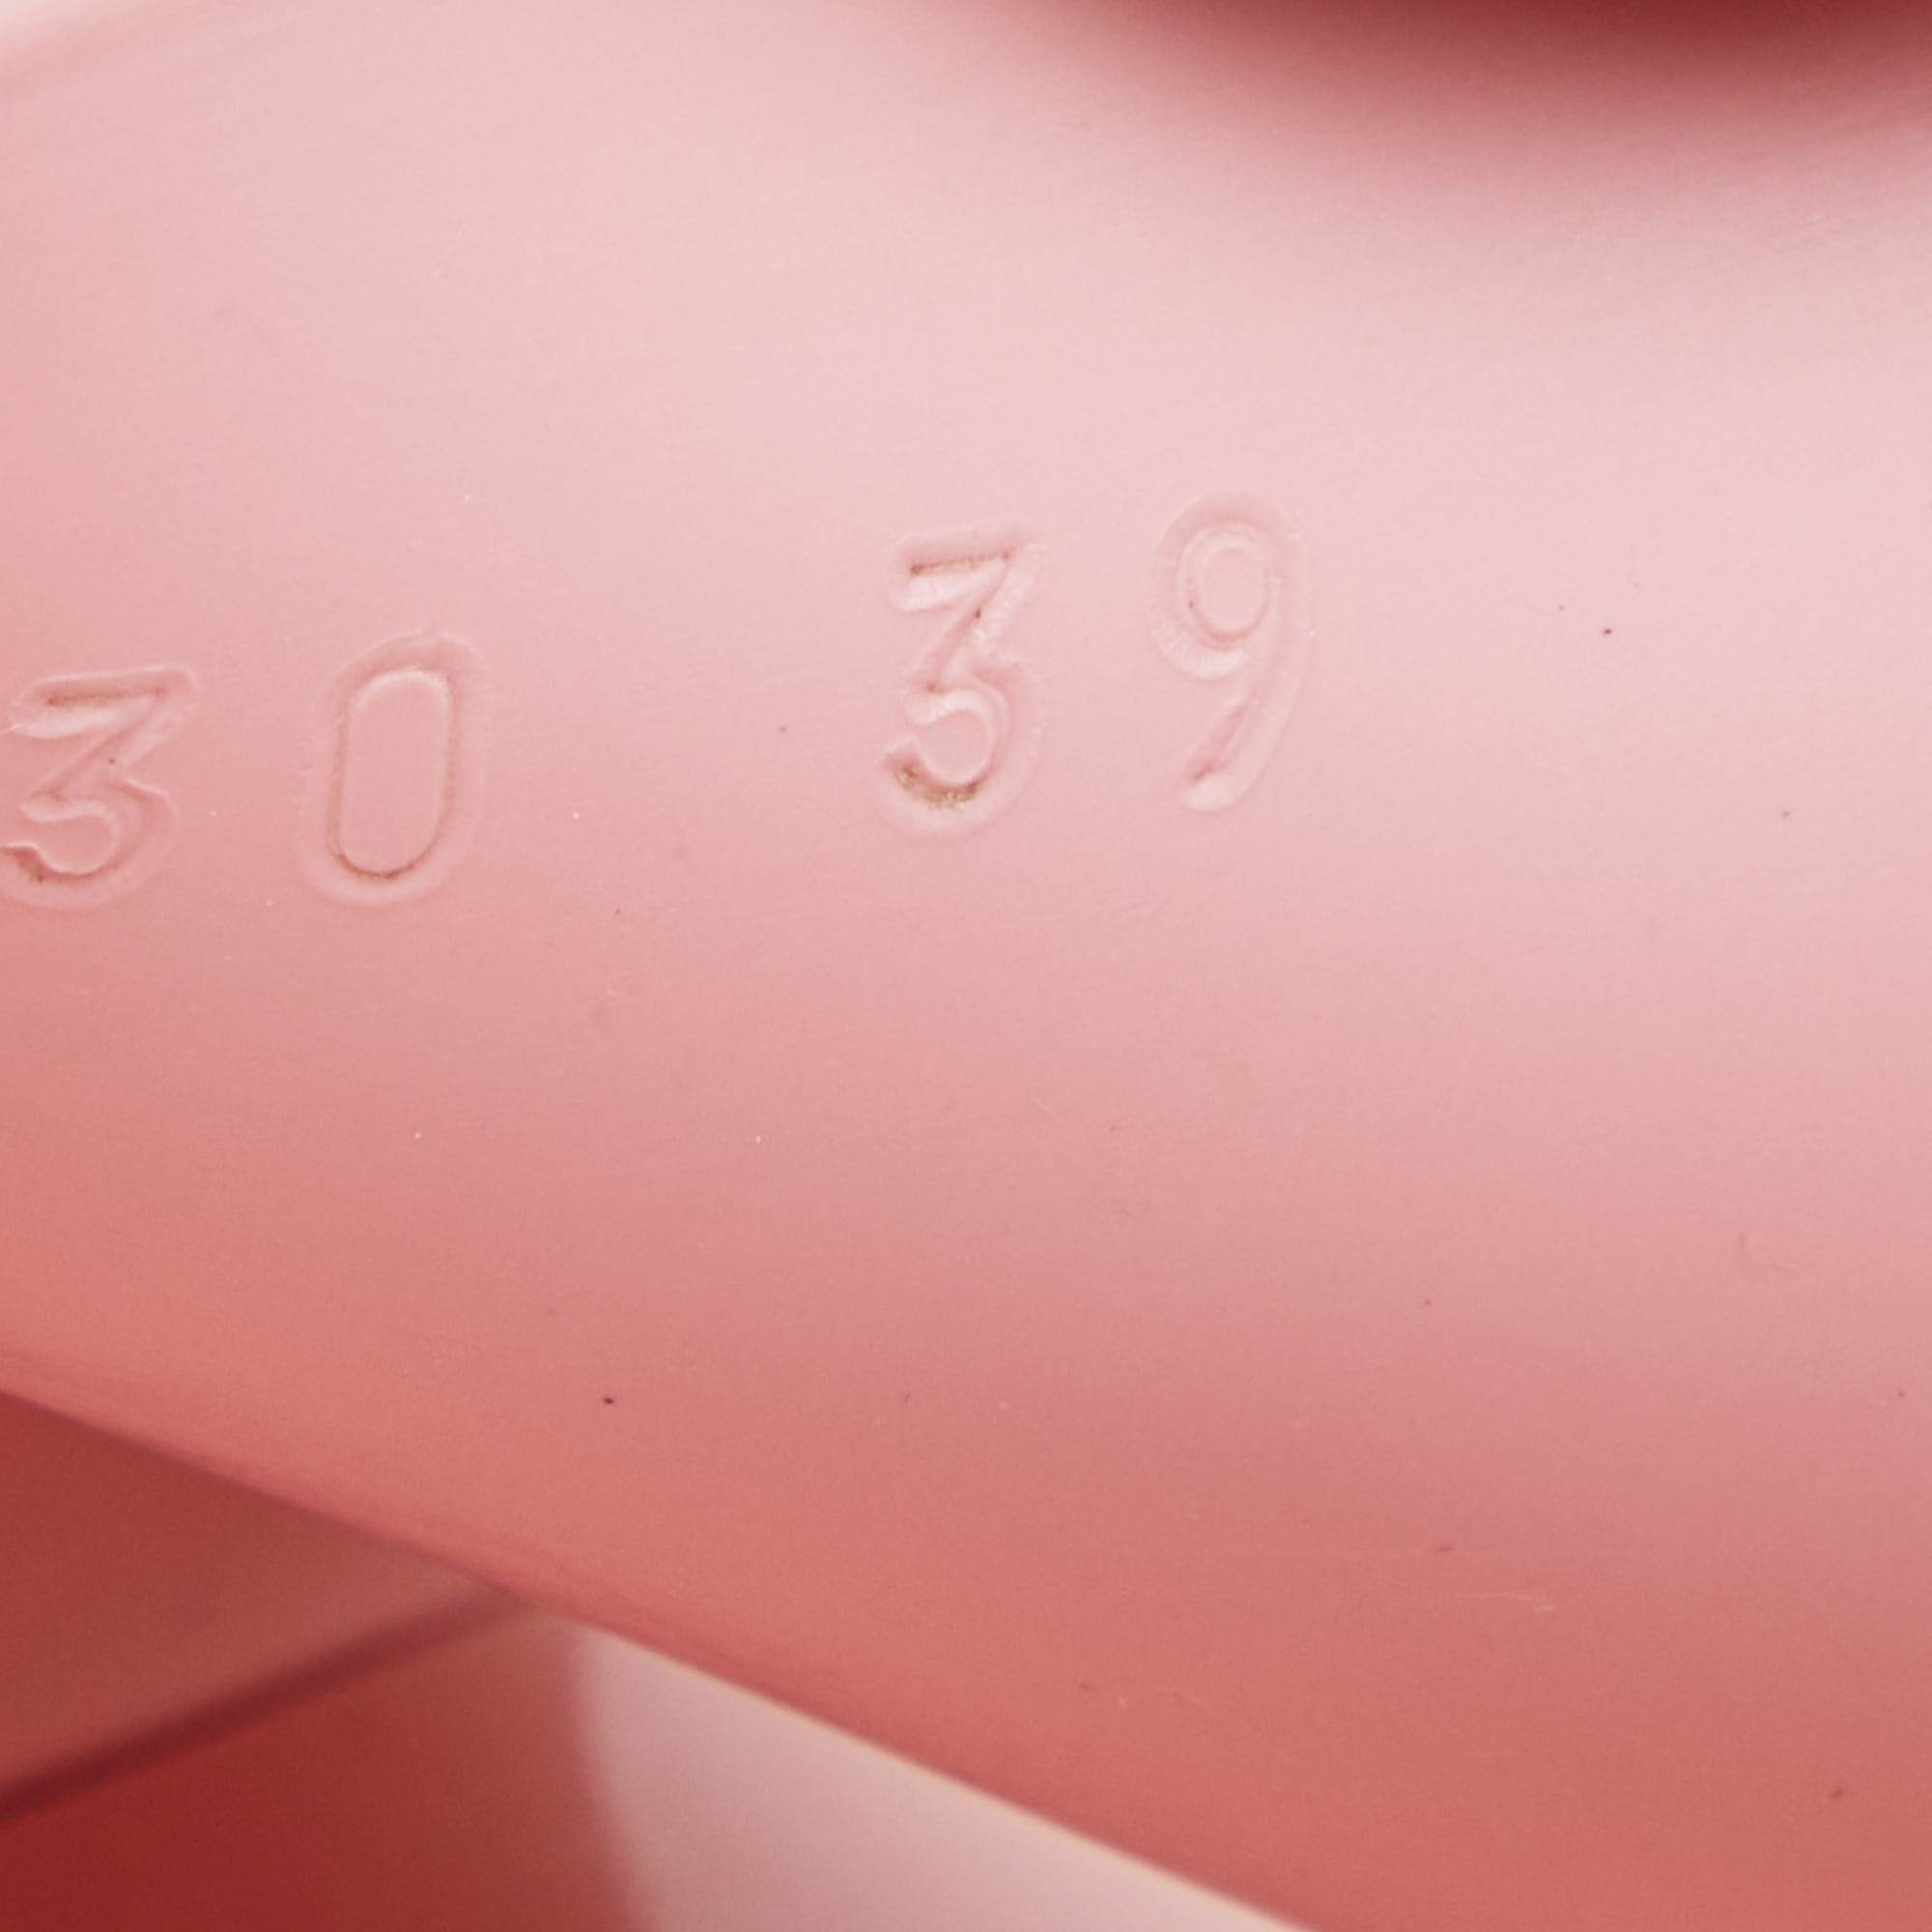 Gucci Pink Rubber Embossed Logo Block Heel Slide Sandals Size 39